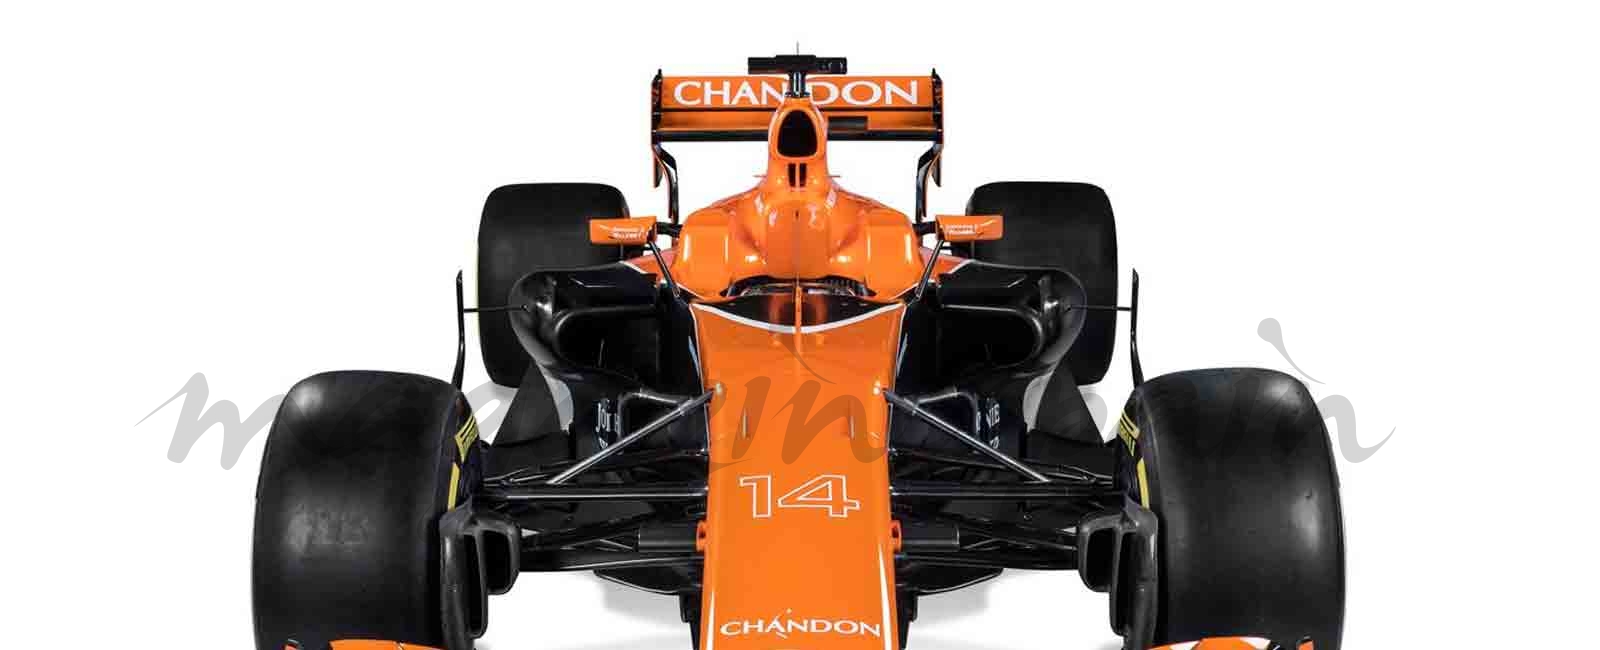 Así es el nuevo McLaren-Honda MCL32 de Fernando Alonso